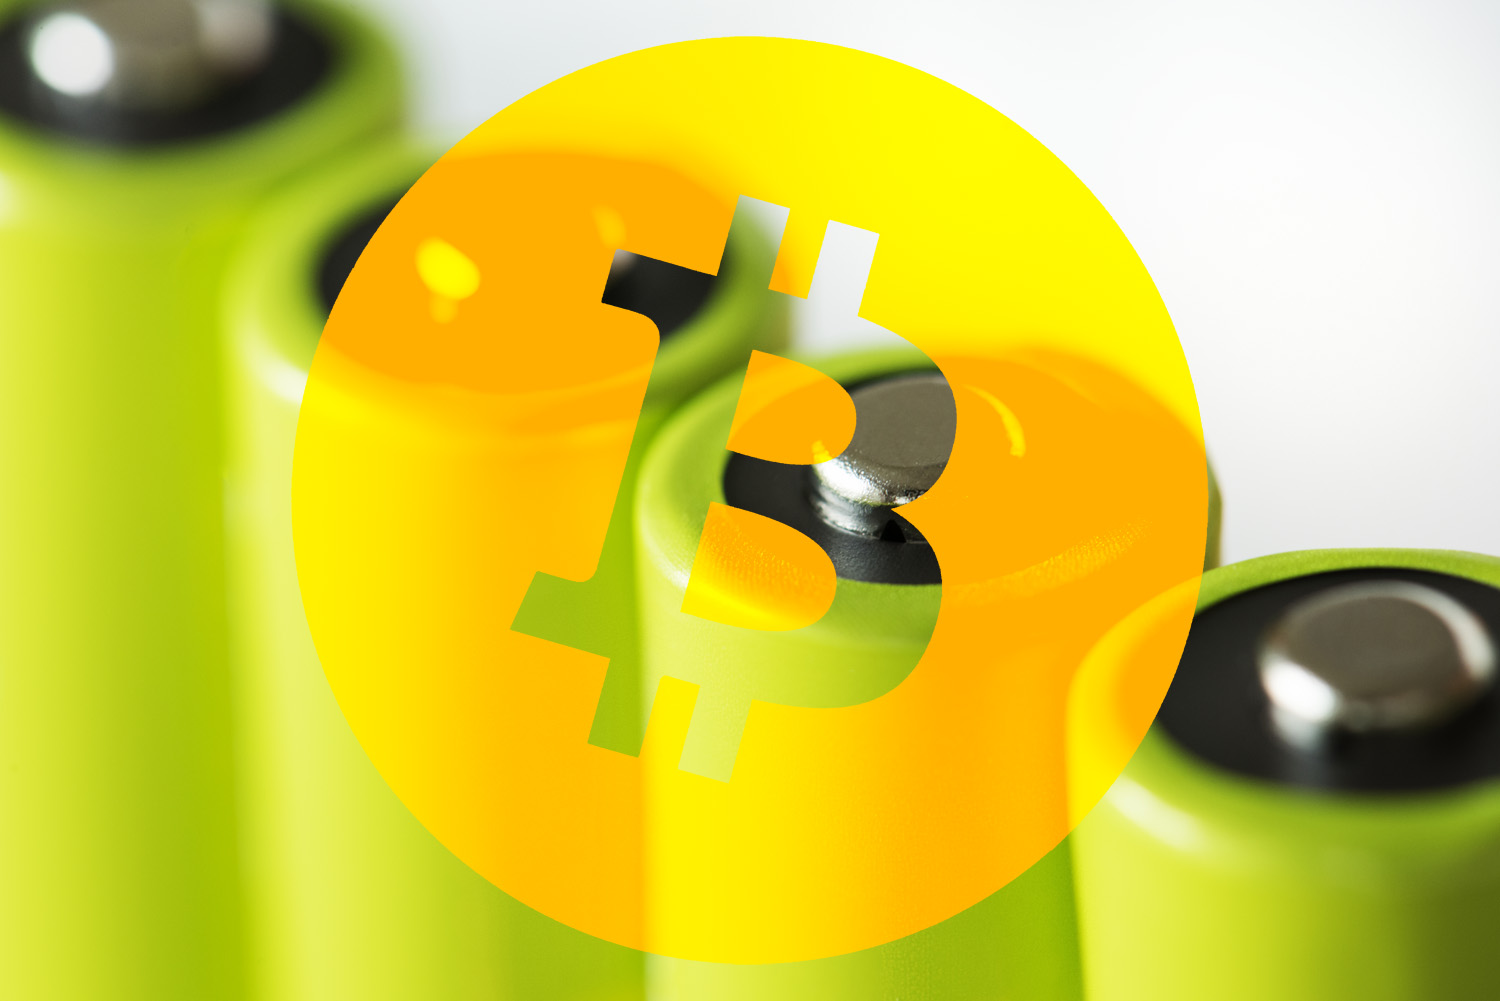 Bitcoin as a battery